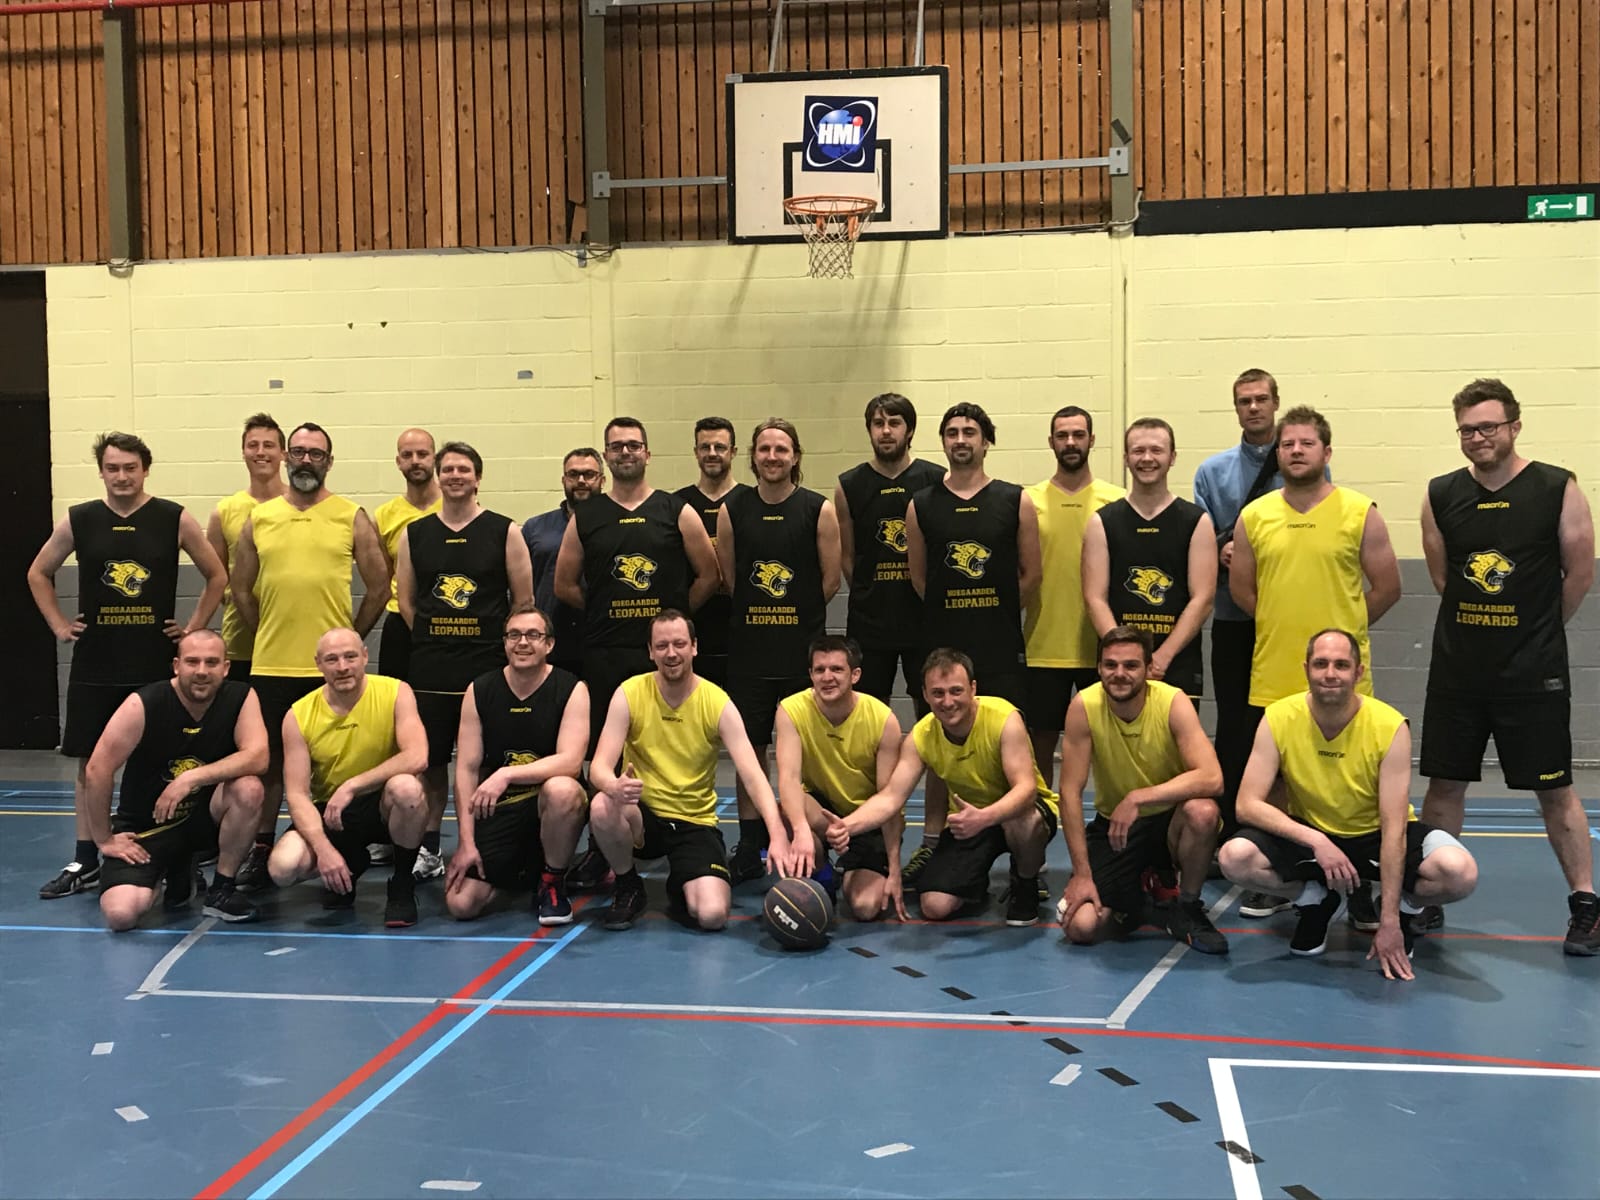 Basketbalclub Hoegaarden Leopards bijna aan eerste lustrum toe. Nieuwe spelers welkom!